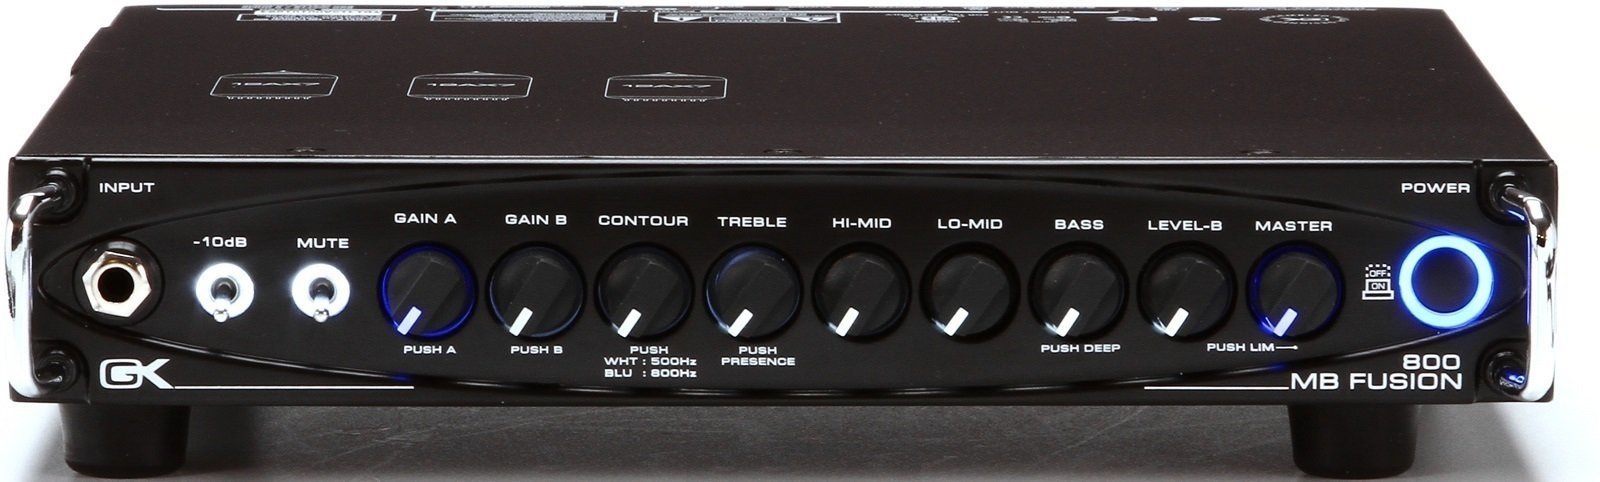 Hybrid Bass Amplifier Gallien Krueger MB-FUSION800